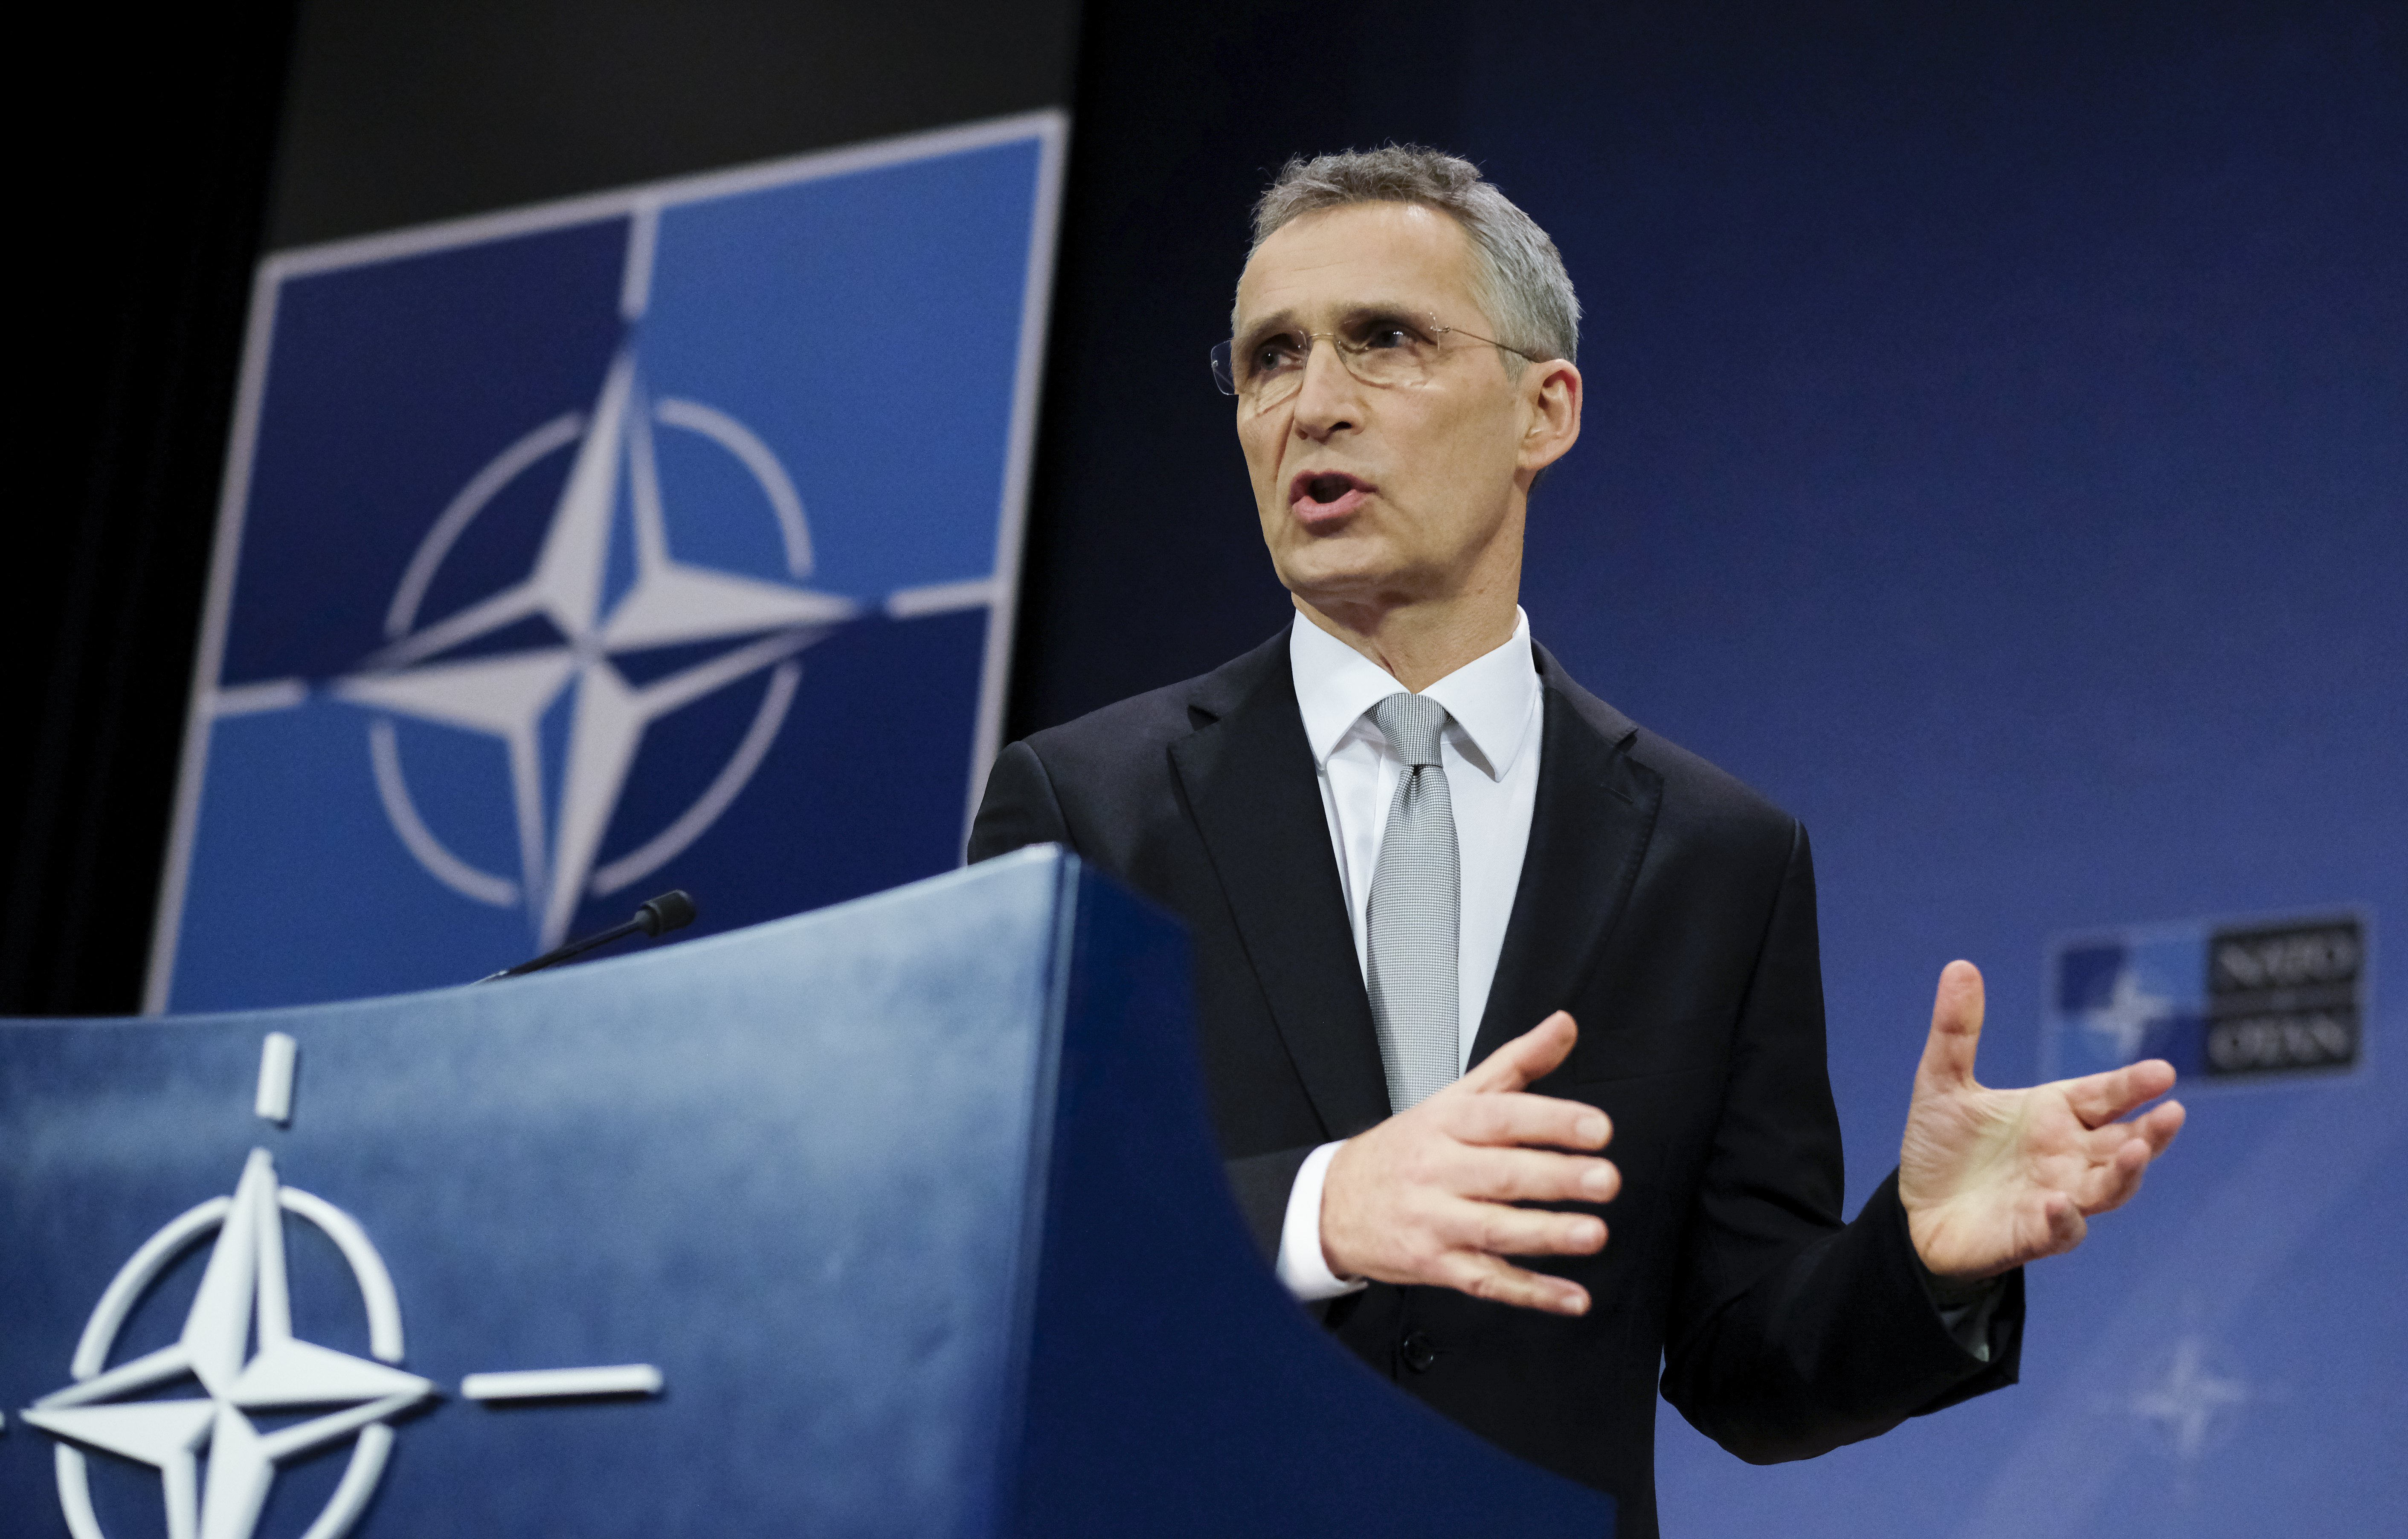 NATO &#8220;profundamente preocupada&#8221; com caso de envenenamento de ex-espião russo